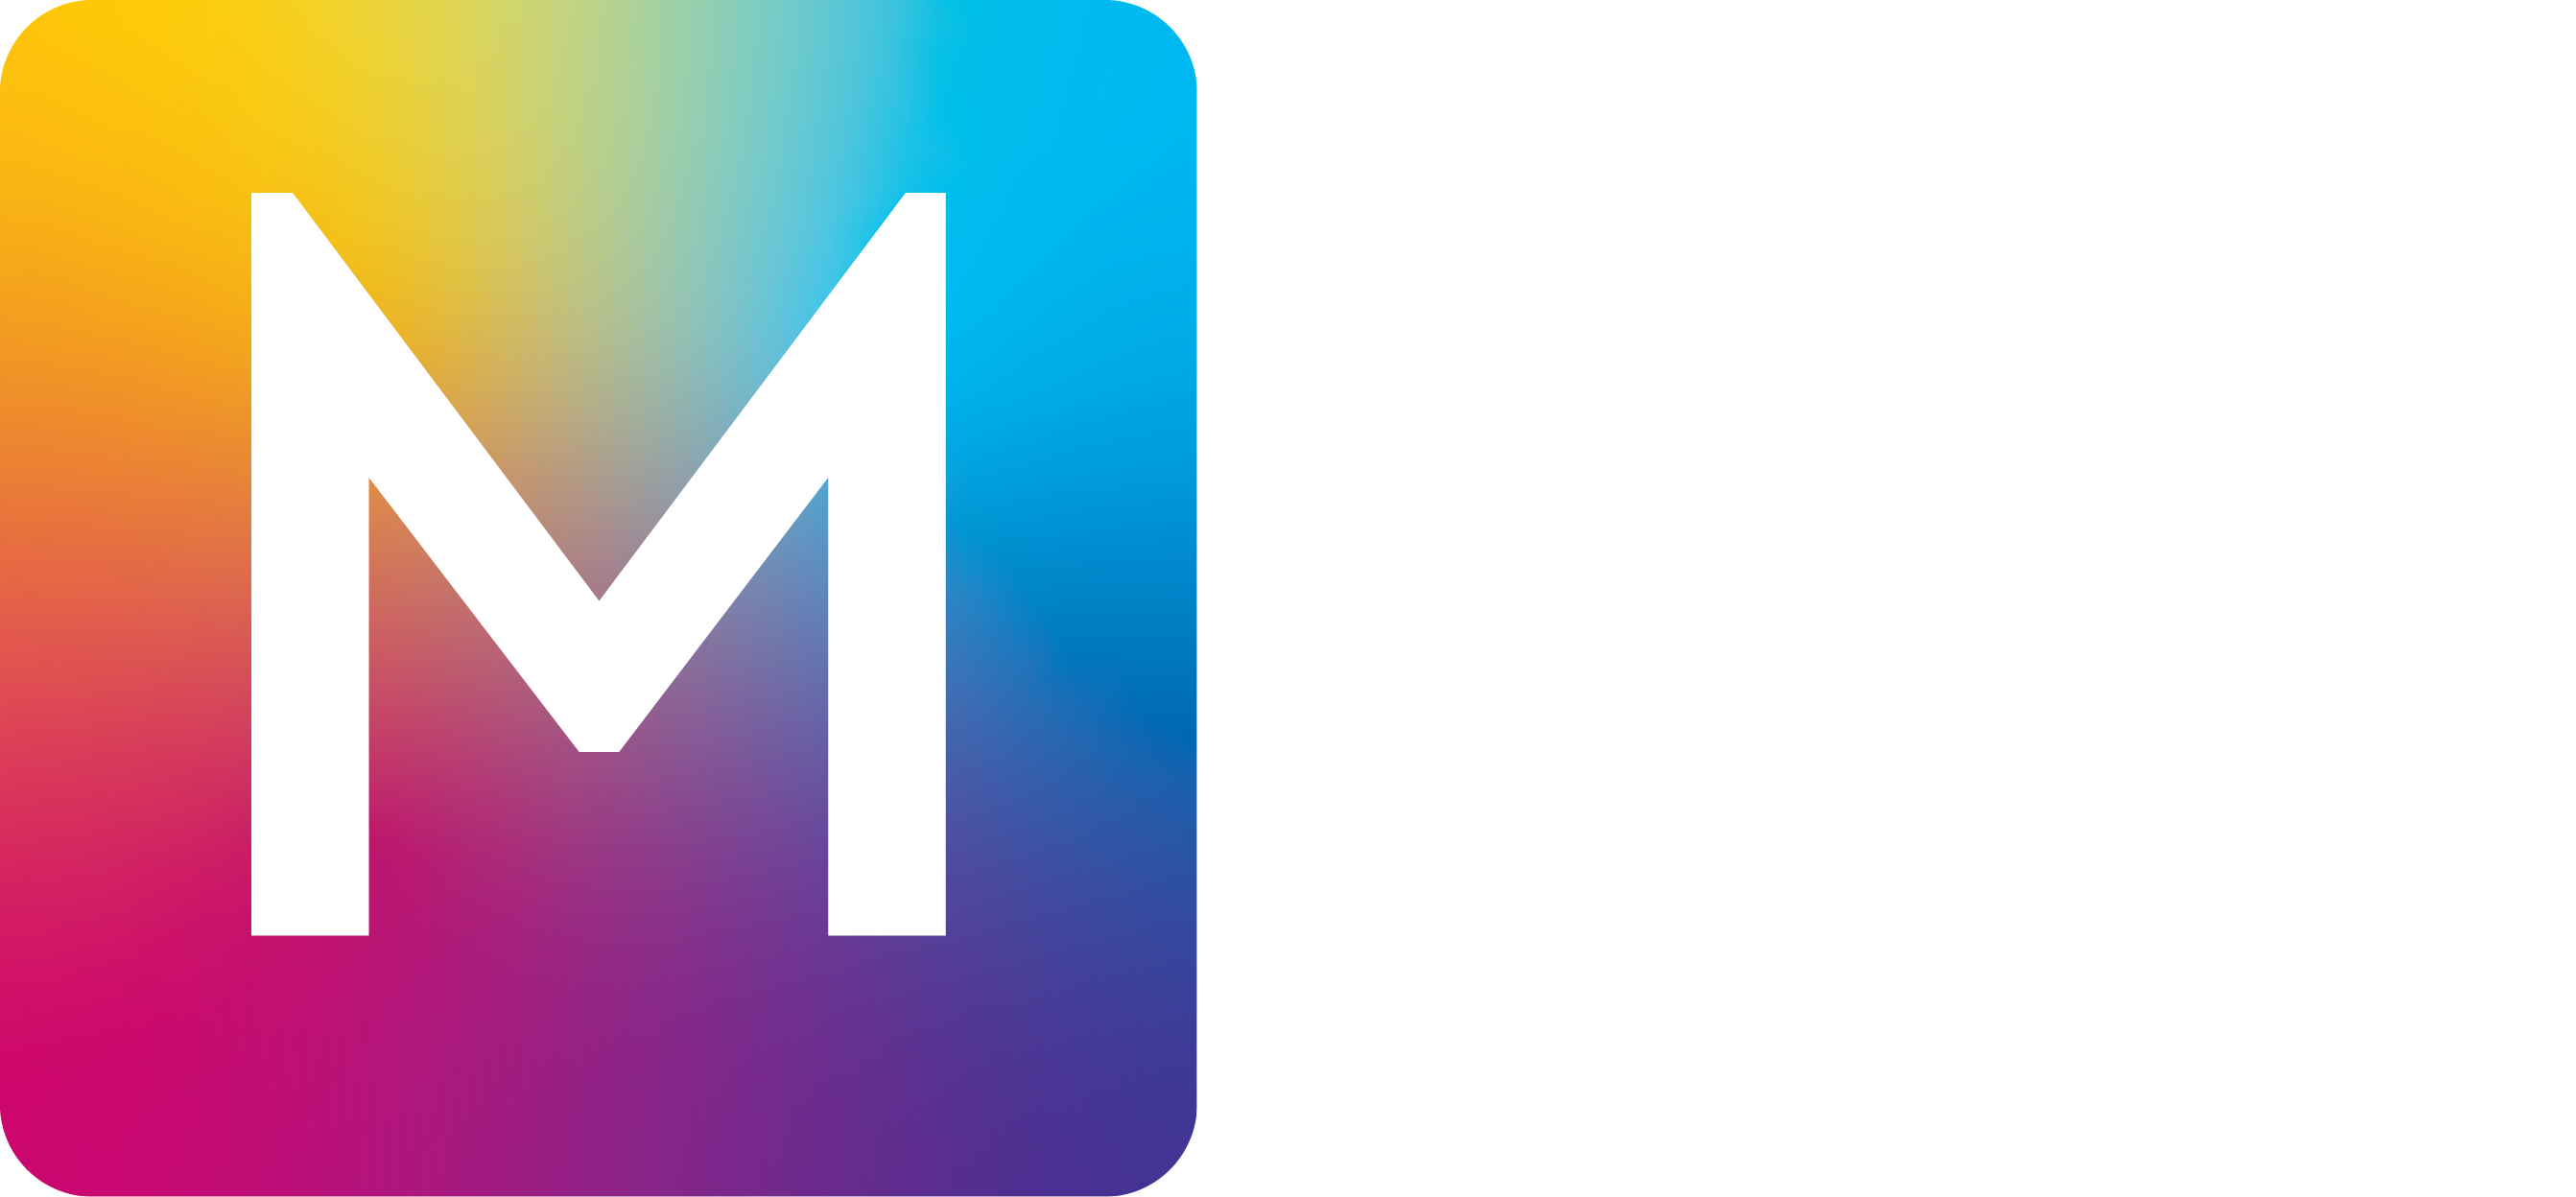 The Media Crew logo